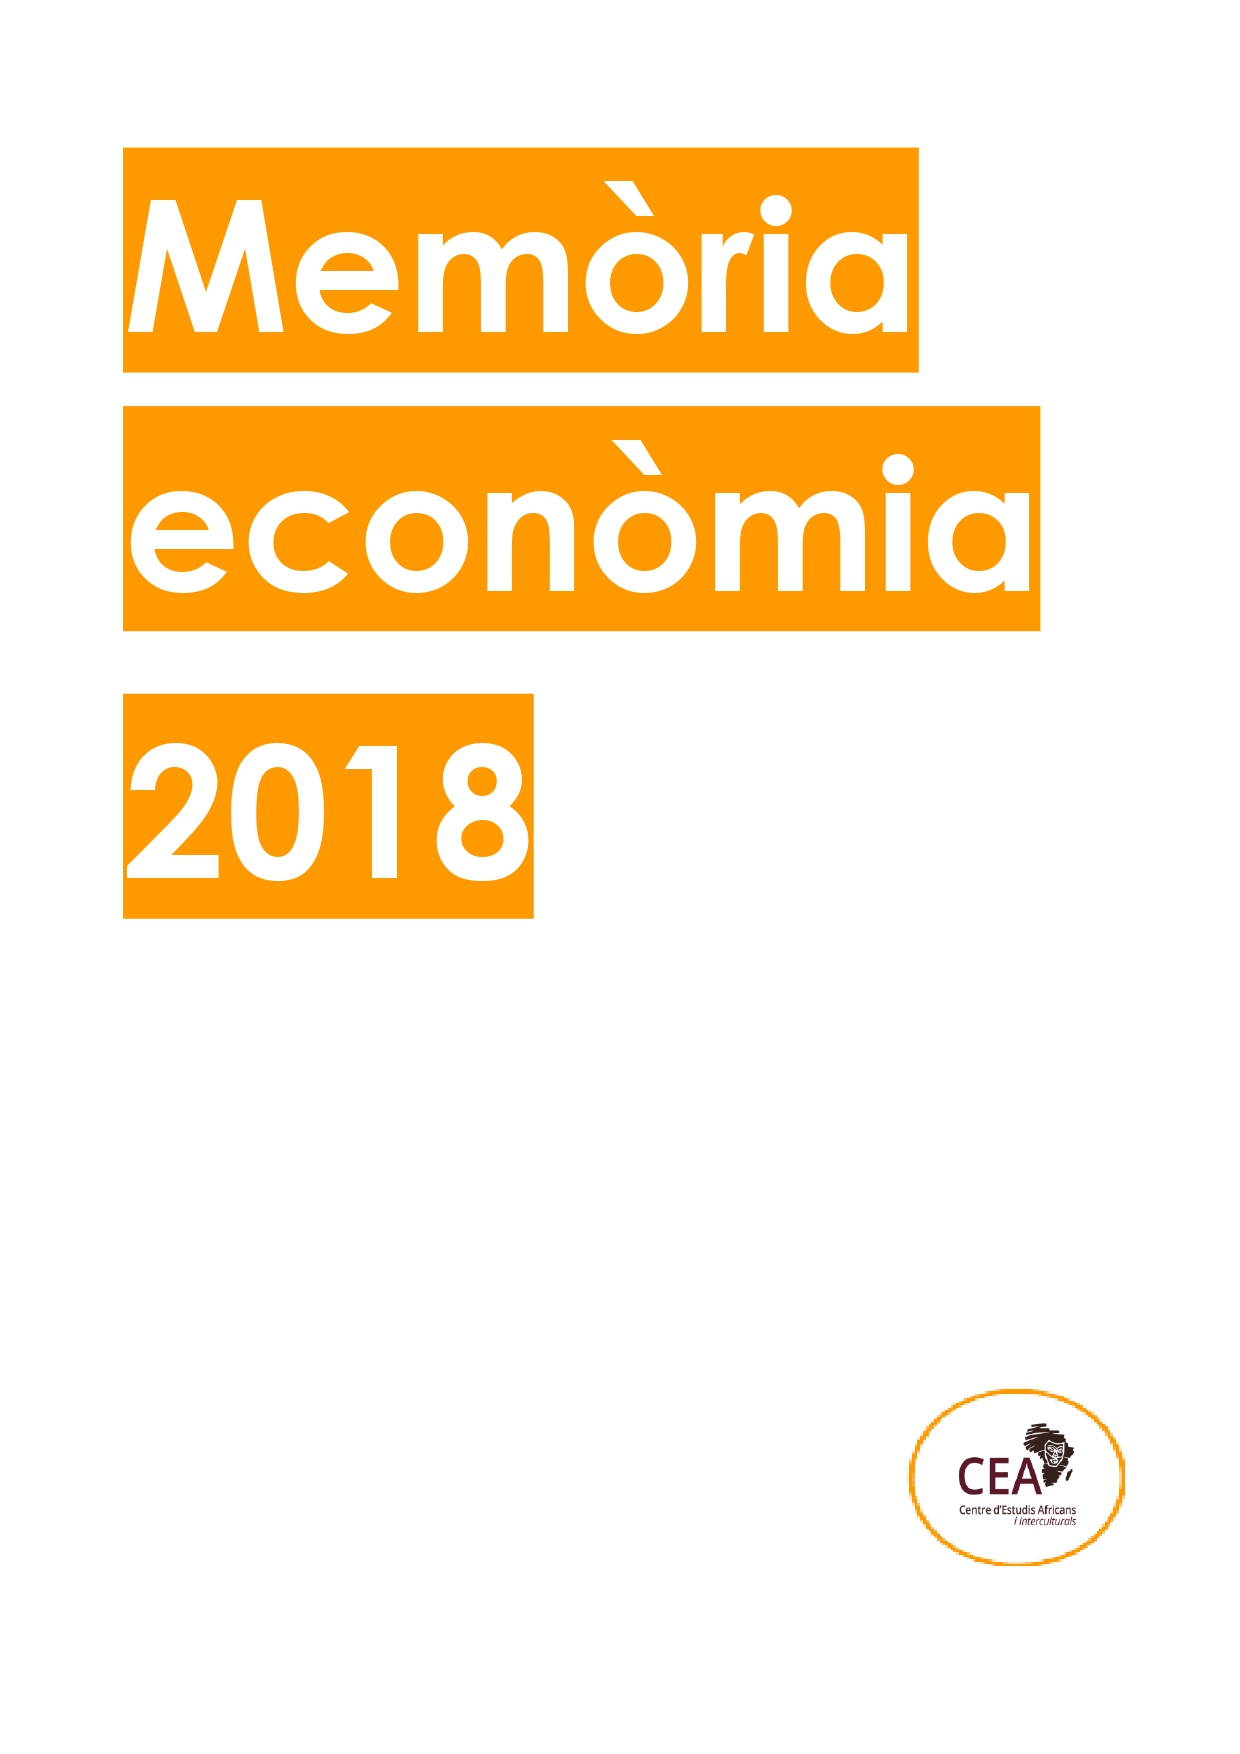 Memòria econòmica 2018